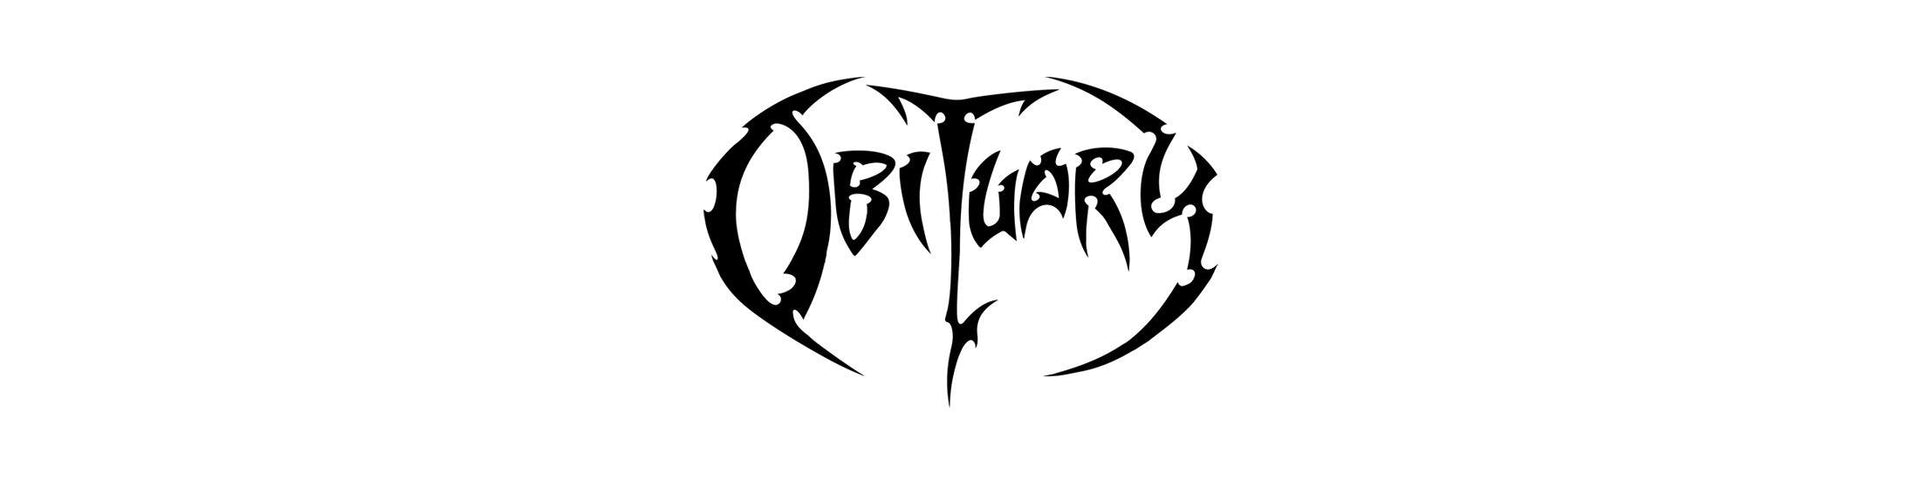 Shop – Obituary – Band & Music Merch – Cold Cuts Merch